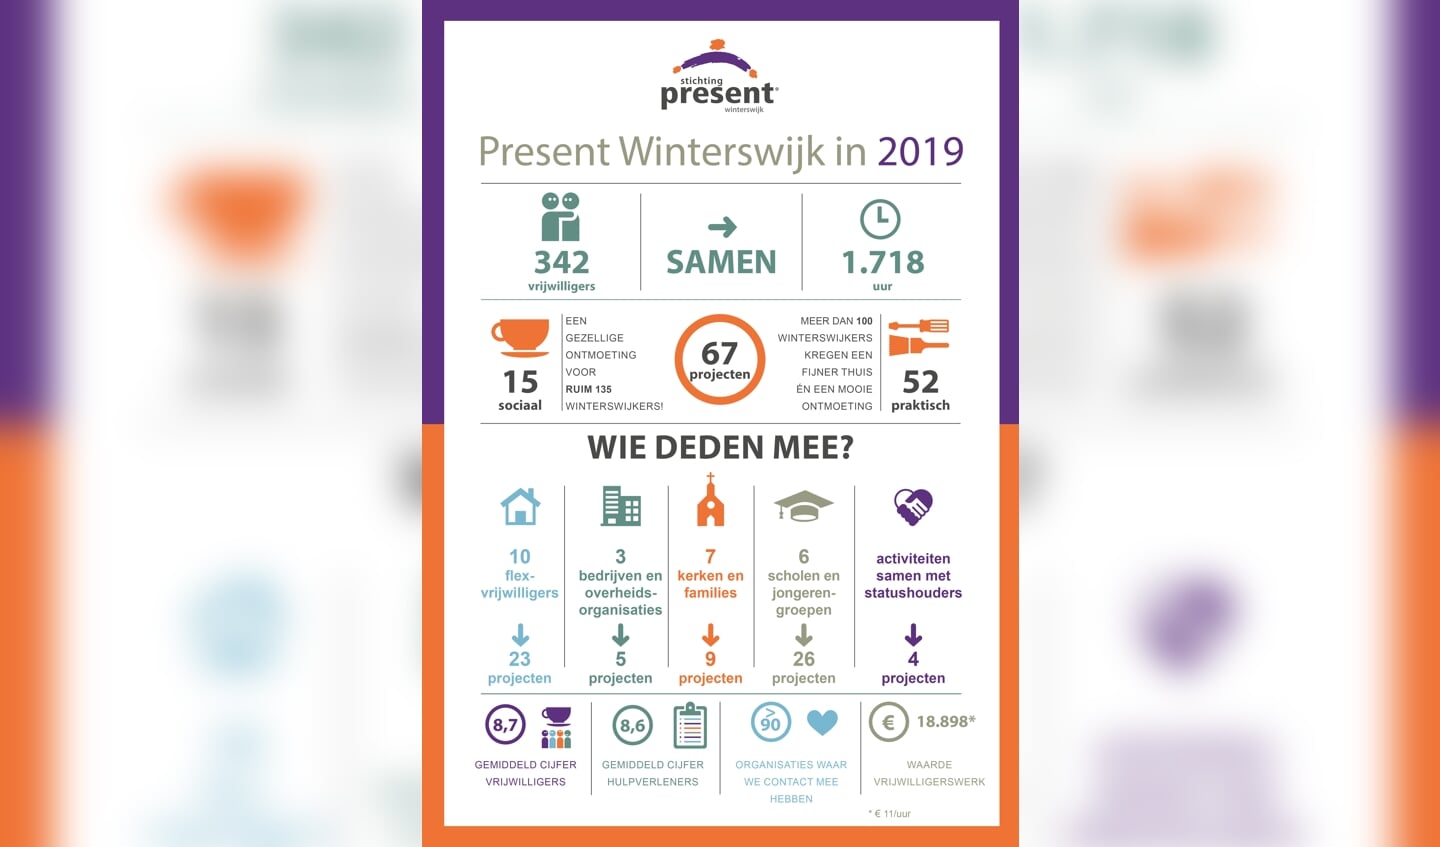 Jaaroverzicht 2019 van Present Winterswijk in beeld